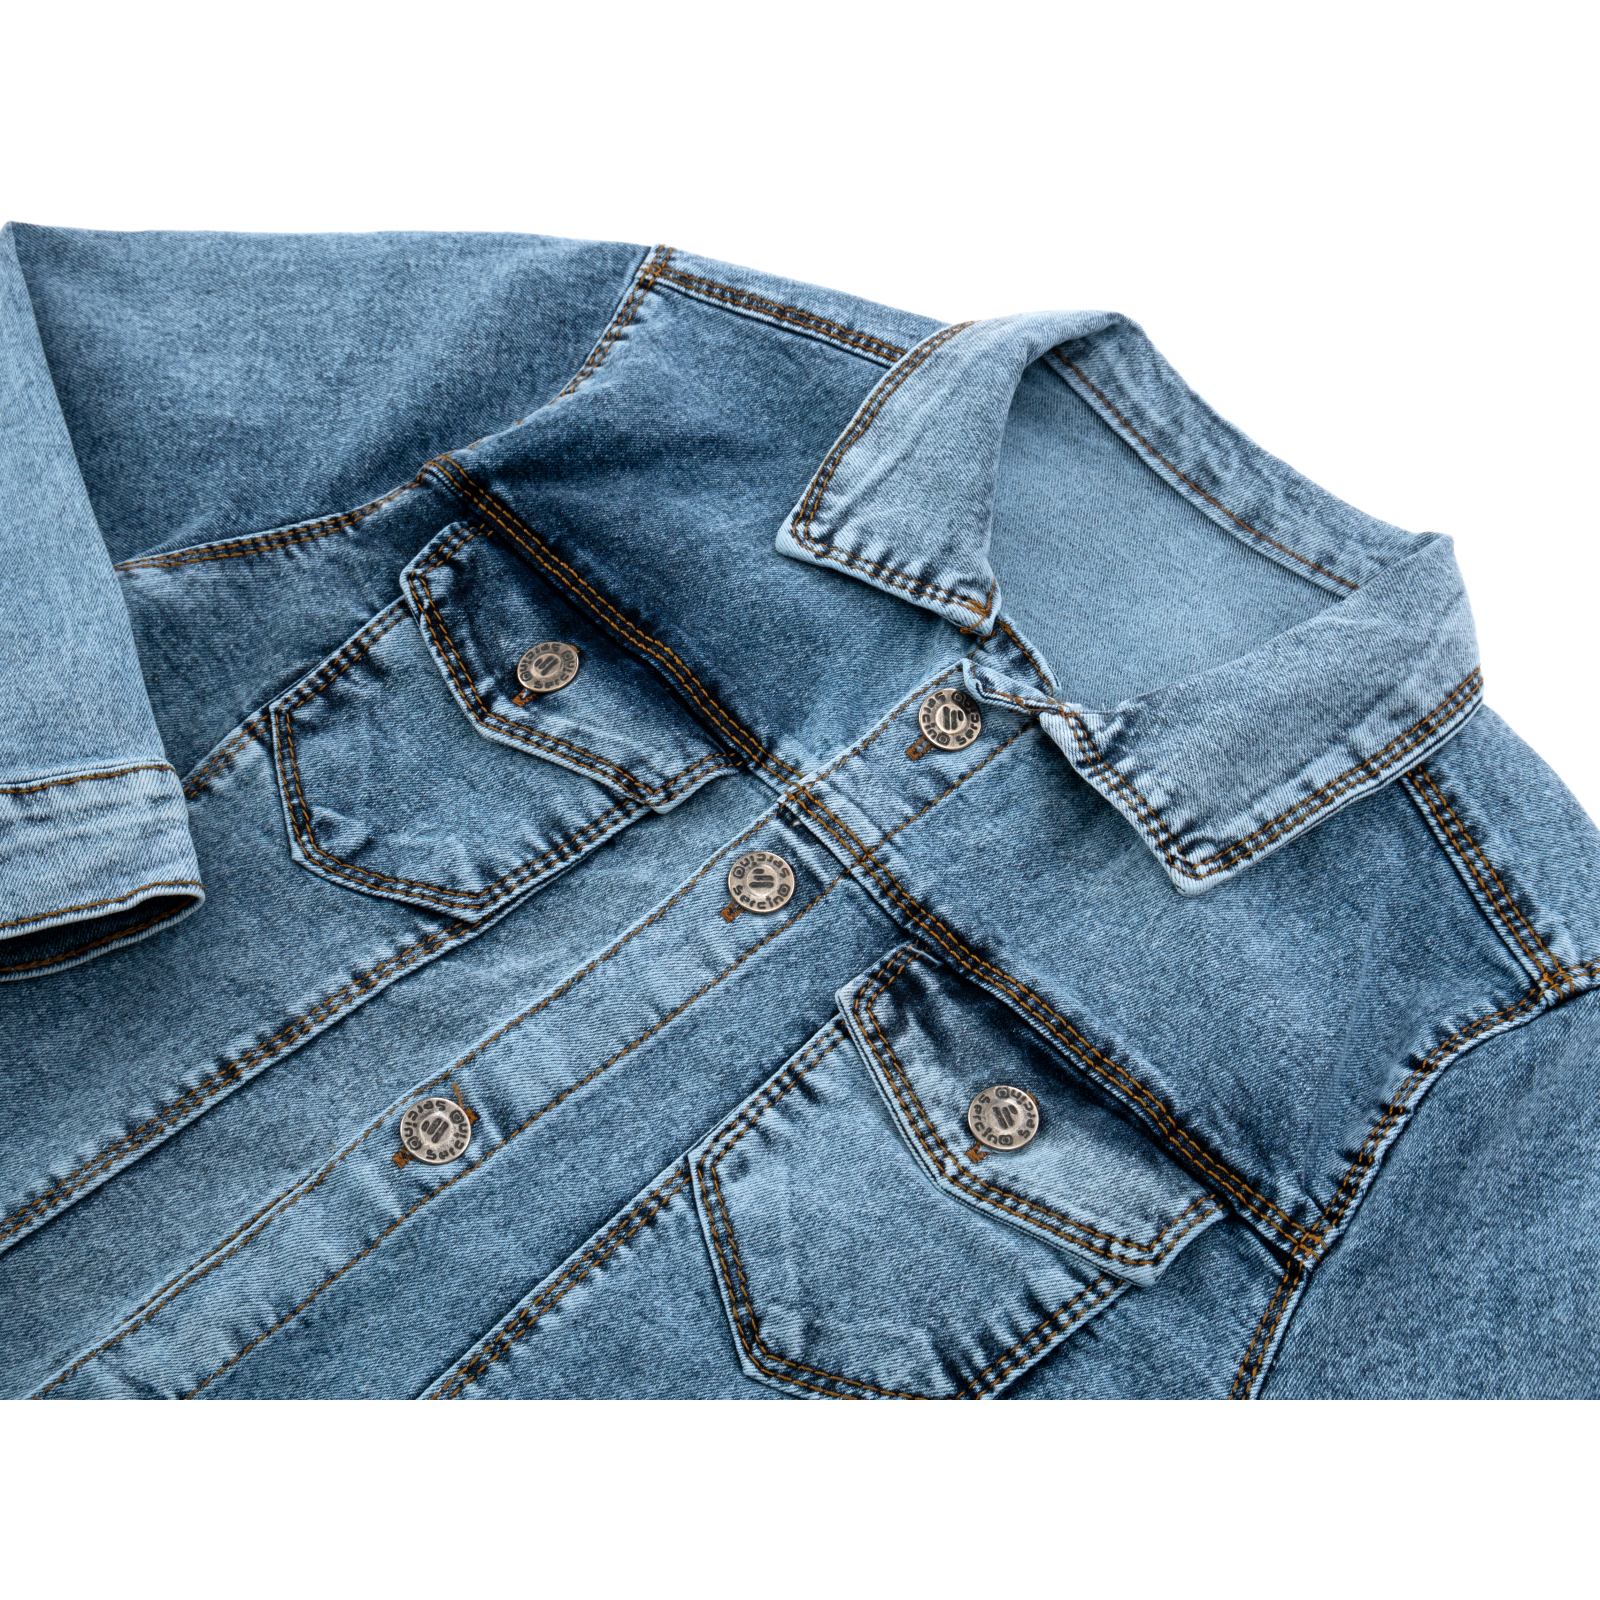 Піджак Sercino джинсовий (99723-134B-blue) зображення 3